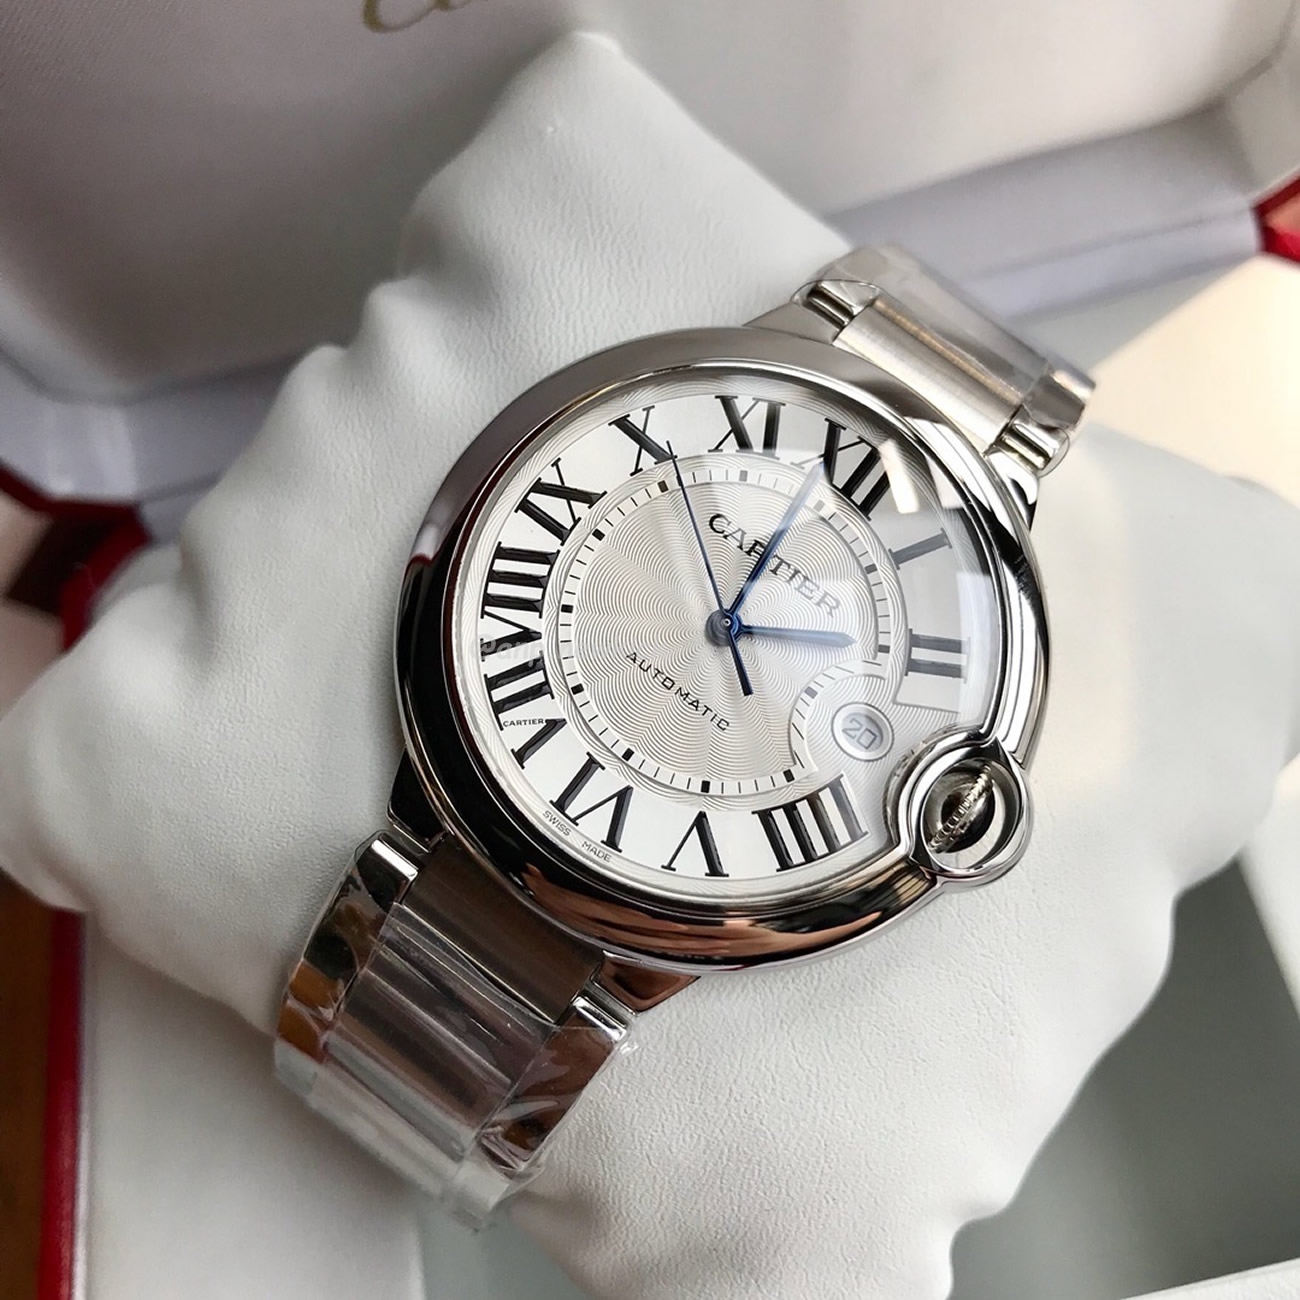 Cartier Ballon Bleu De Cartier Wrist Watch (4) - newkick.org